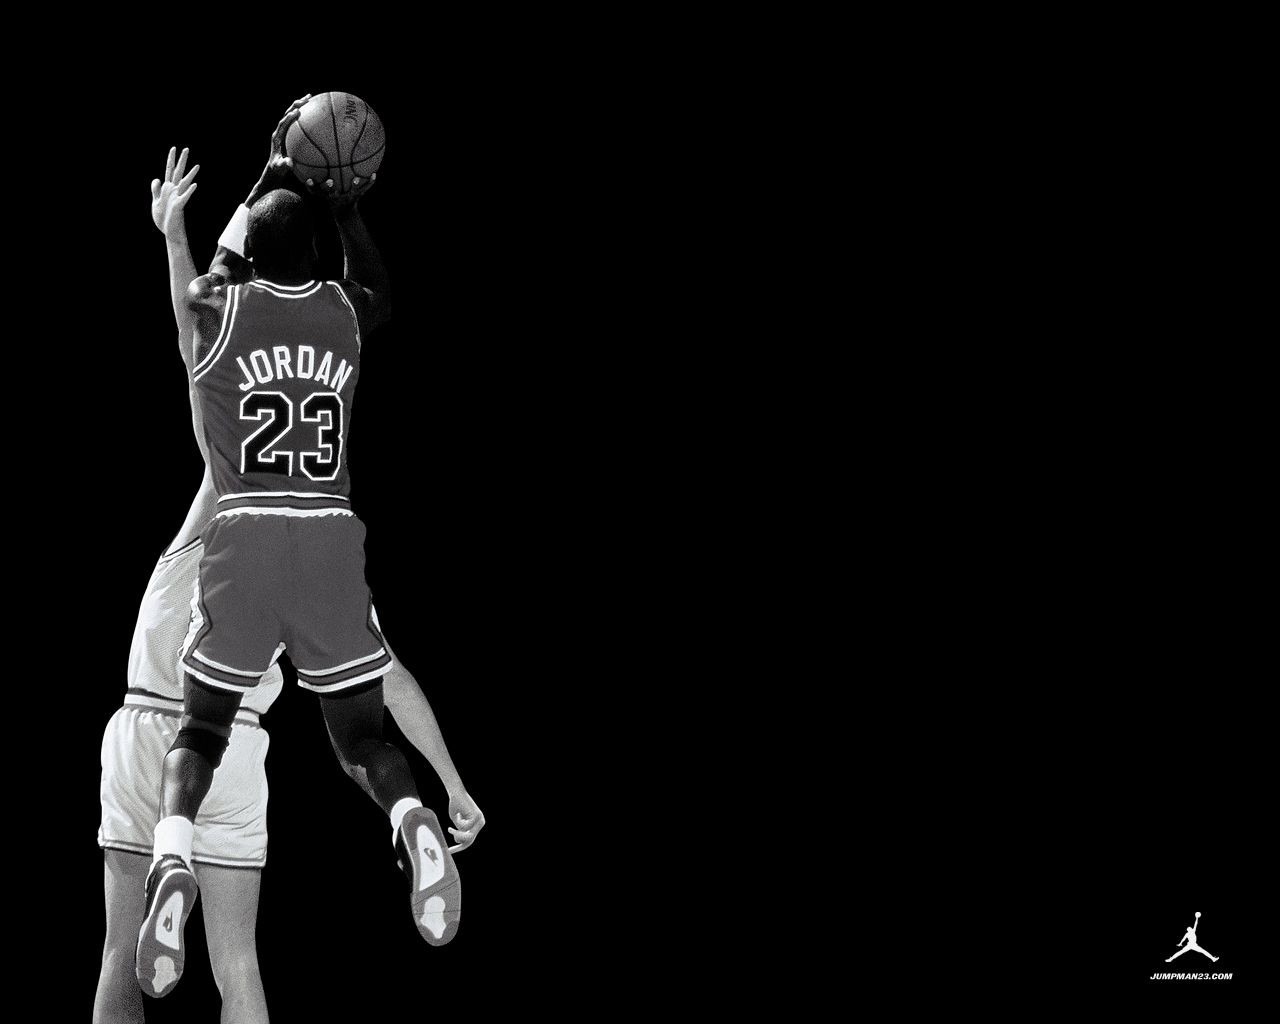 마이클 조던 바탕 화면,검정,농구,검정색과 흰색,농구 선수,플레이어